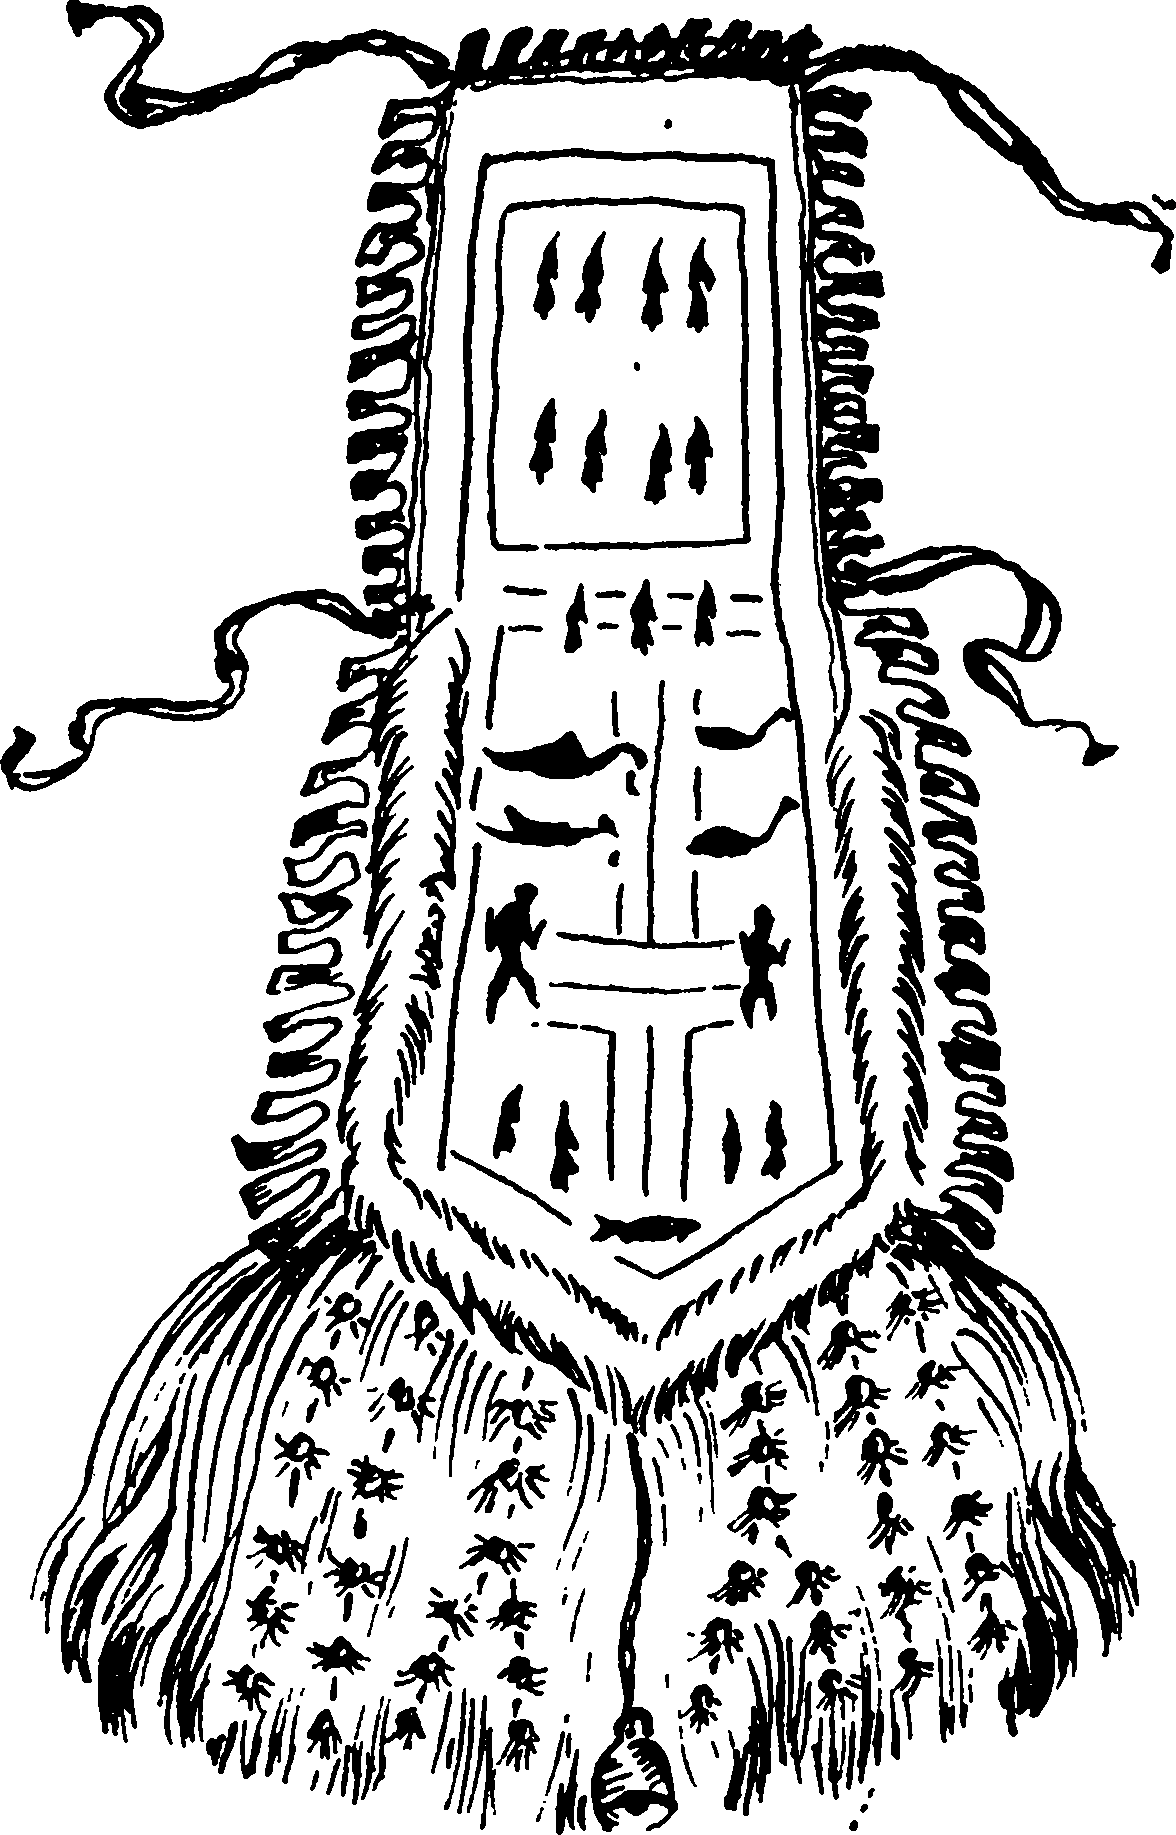 Изображение нижнего, среднего и верхнего миров на ритуальном переднике эвенкийского шамана